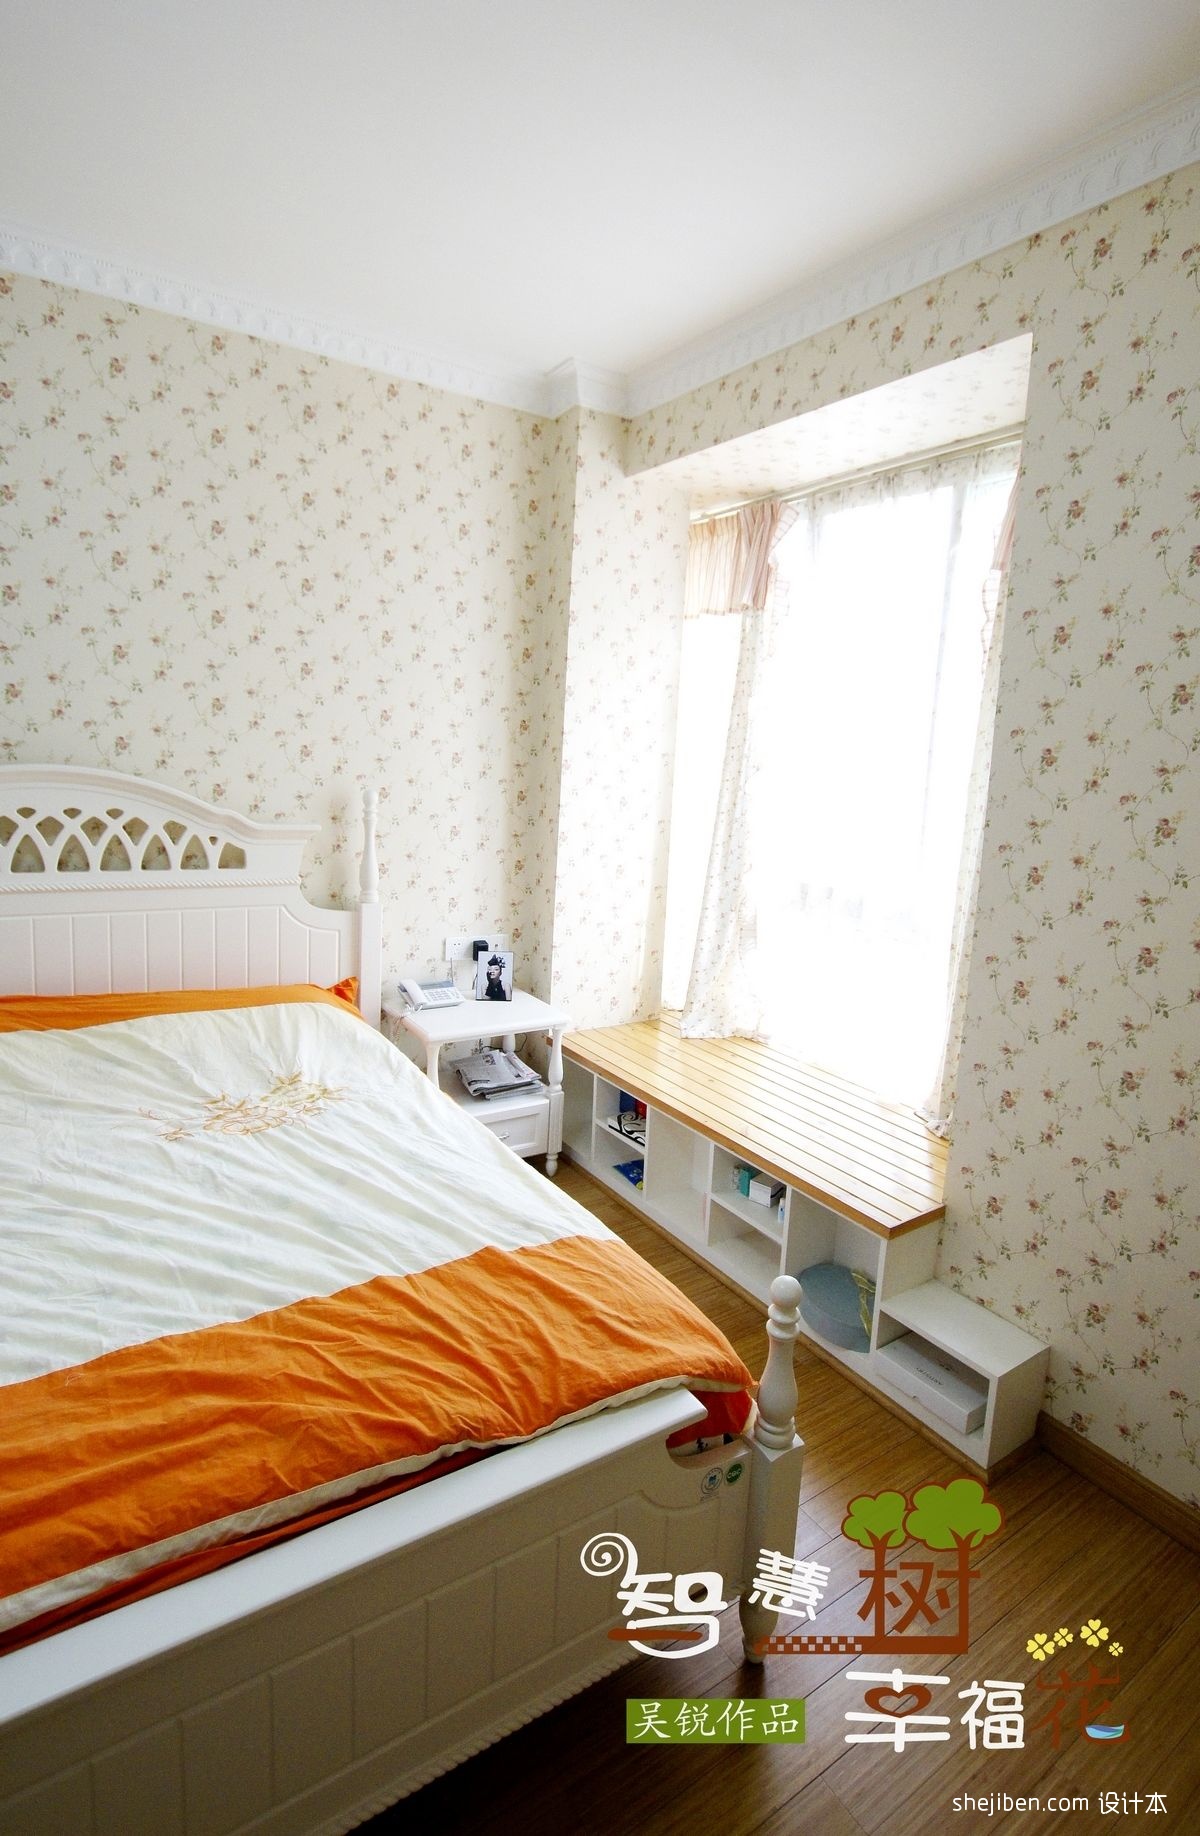 2013田园风格三室一厅家庭壁纸小卧室窗帘装修效果图